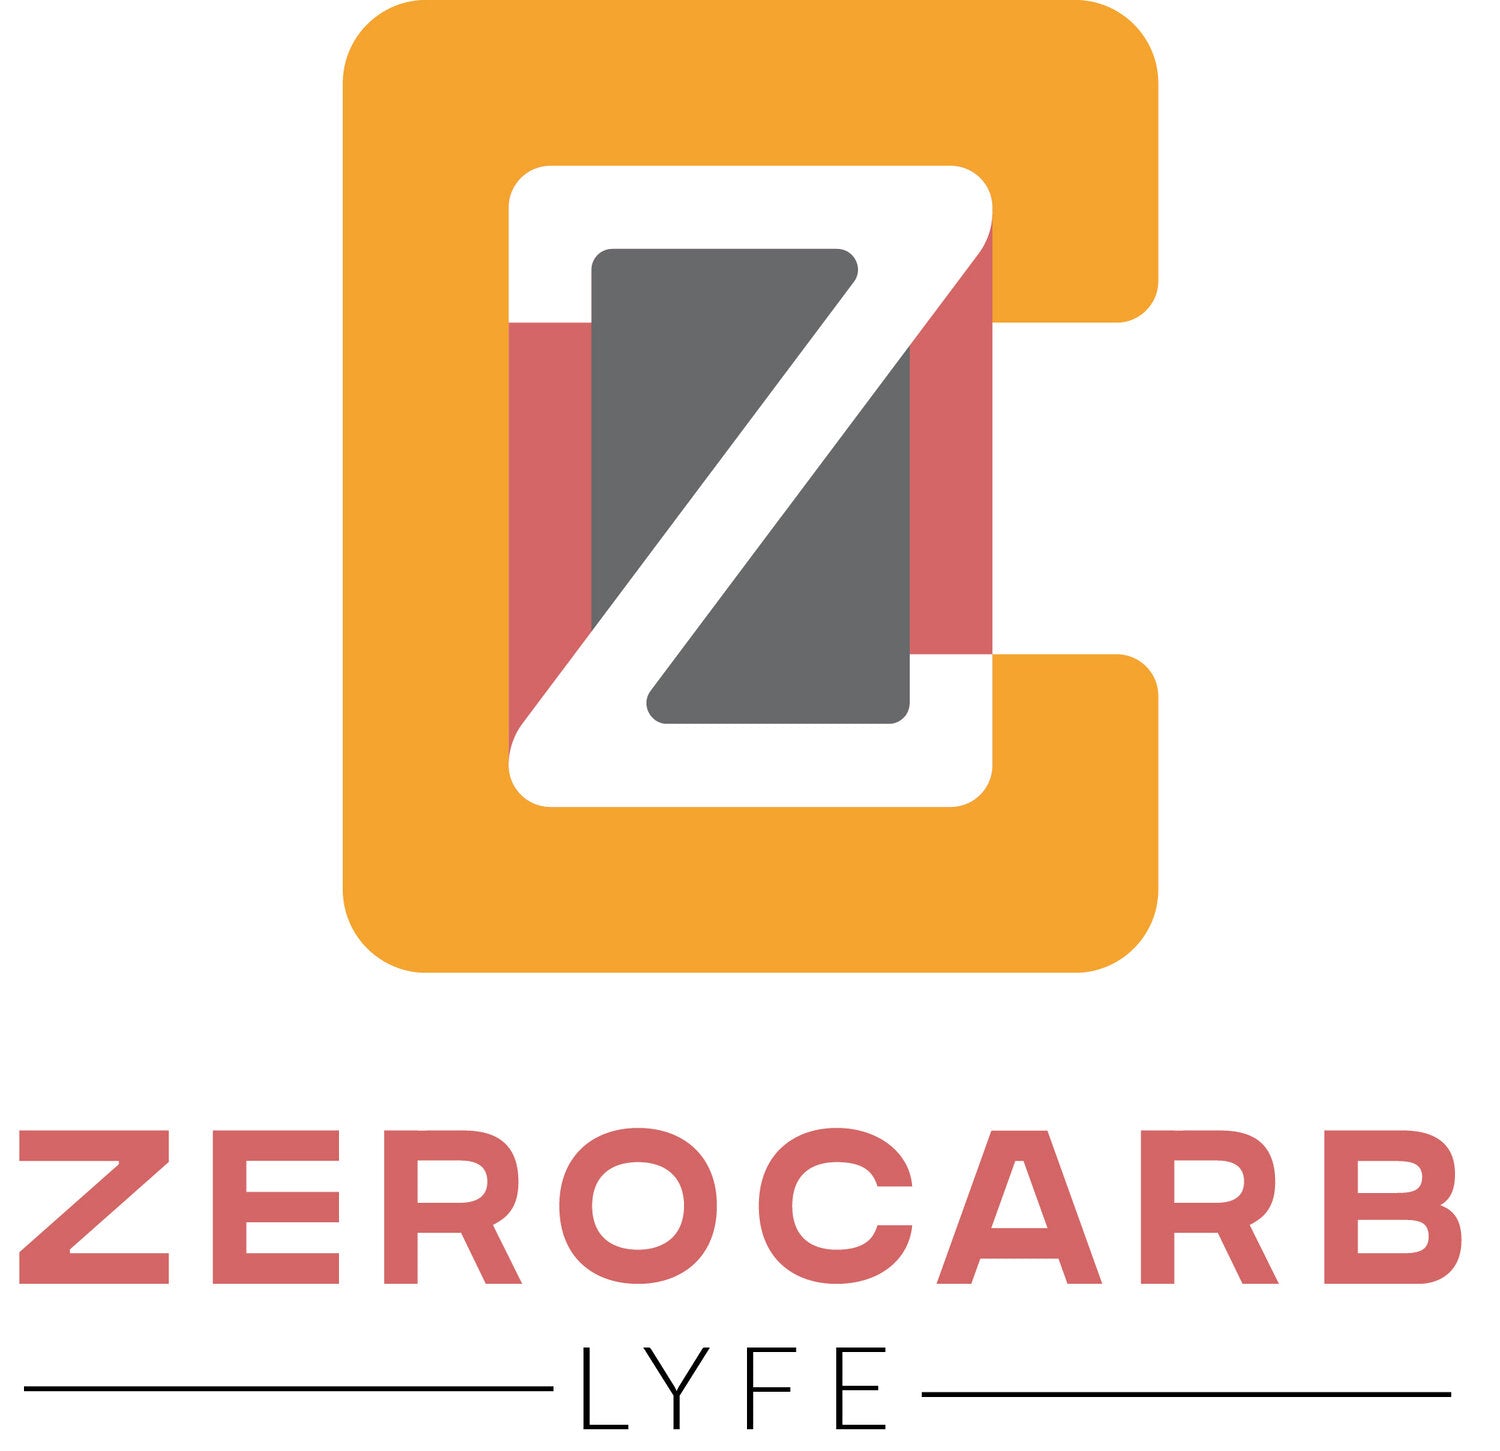 Zerocarb Lyfe